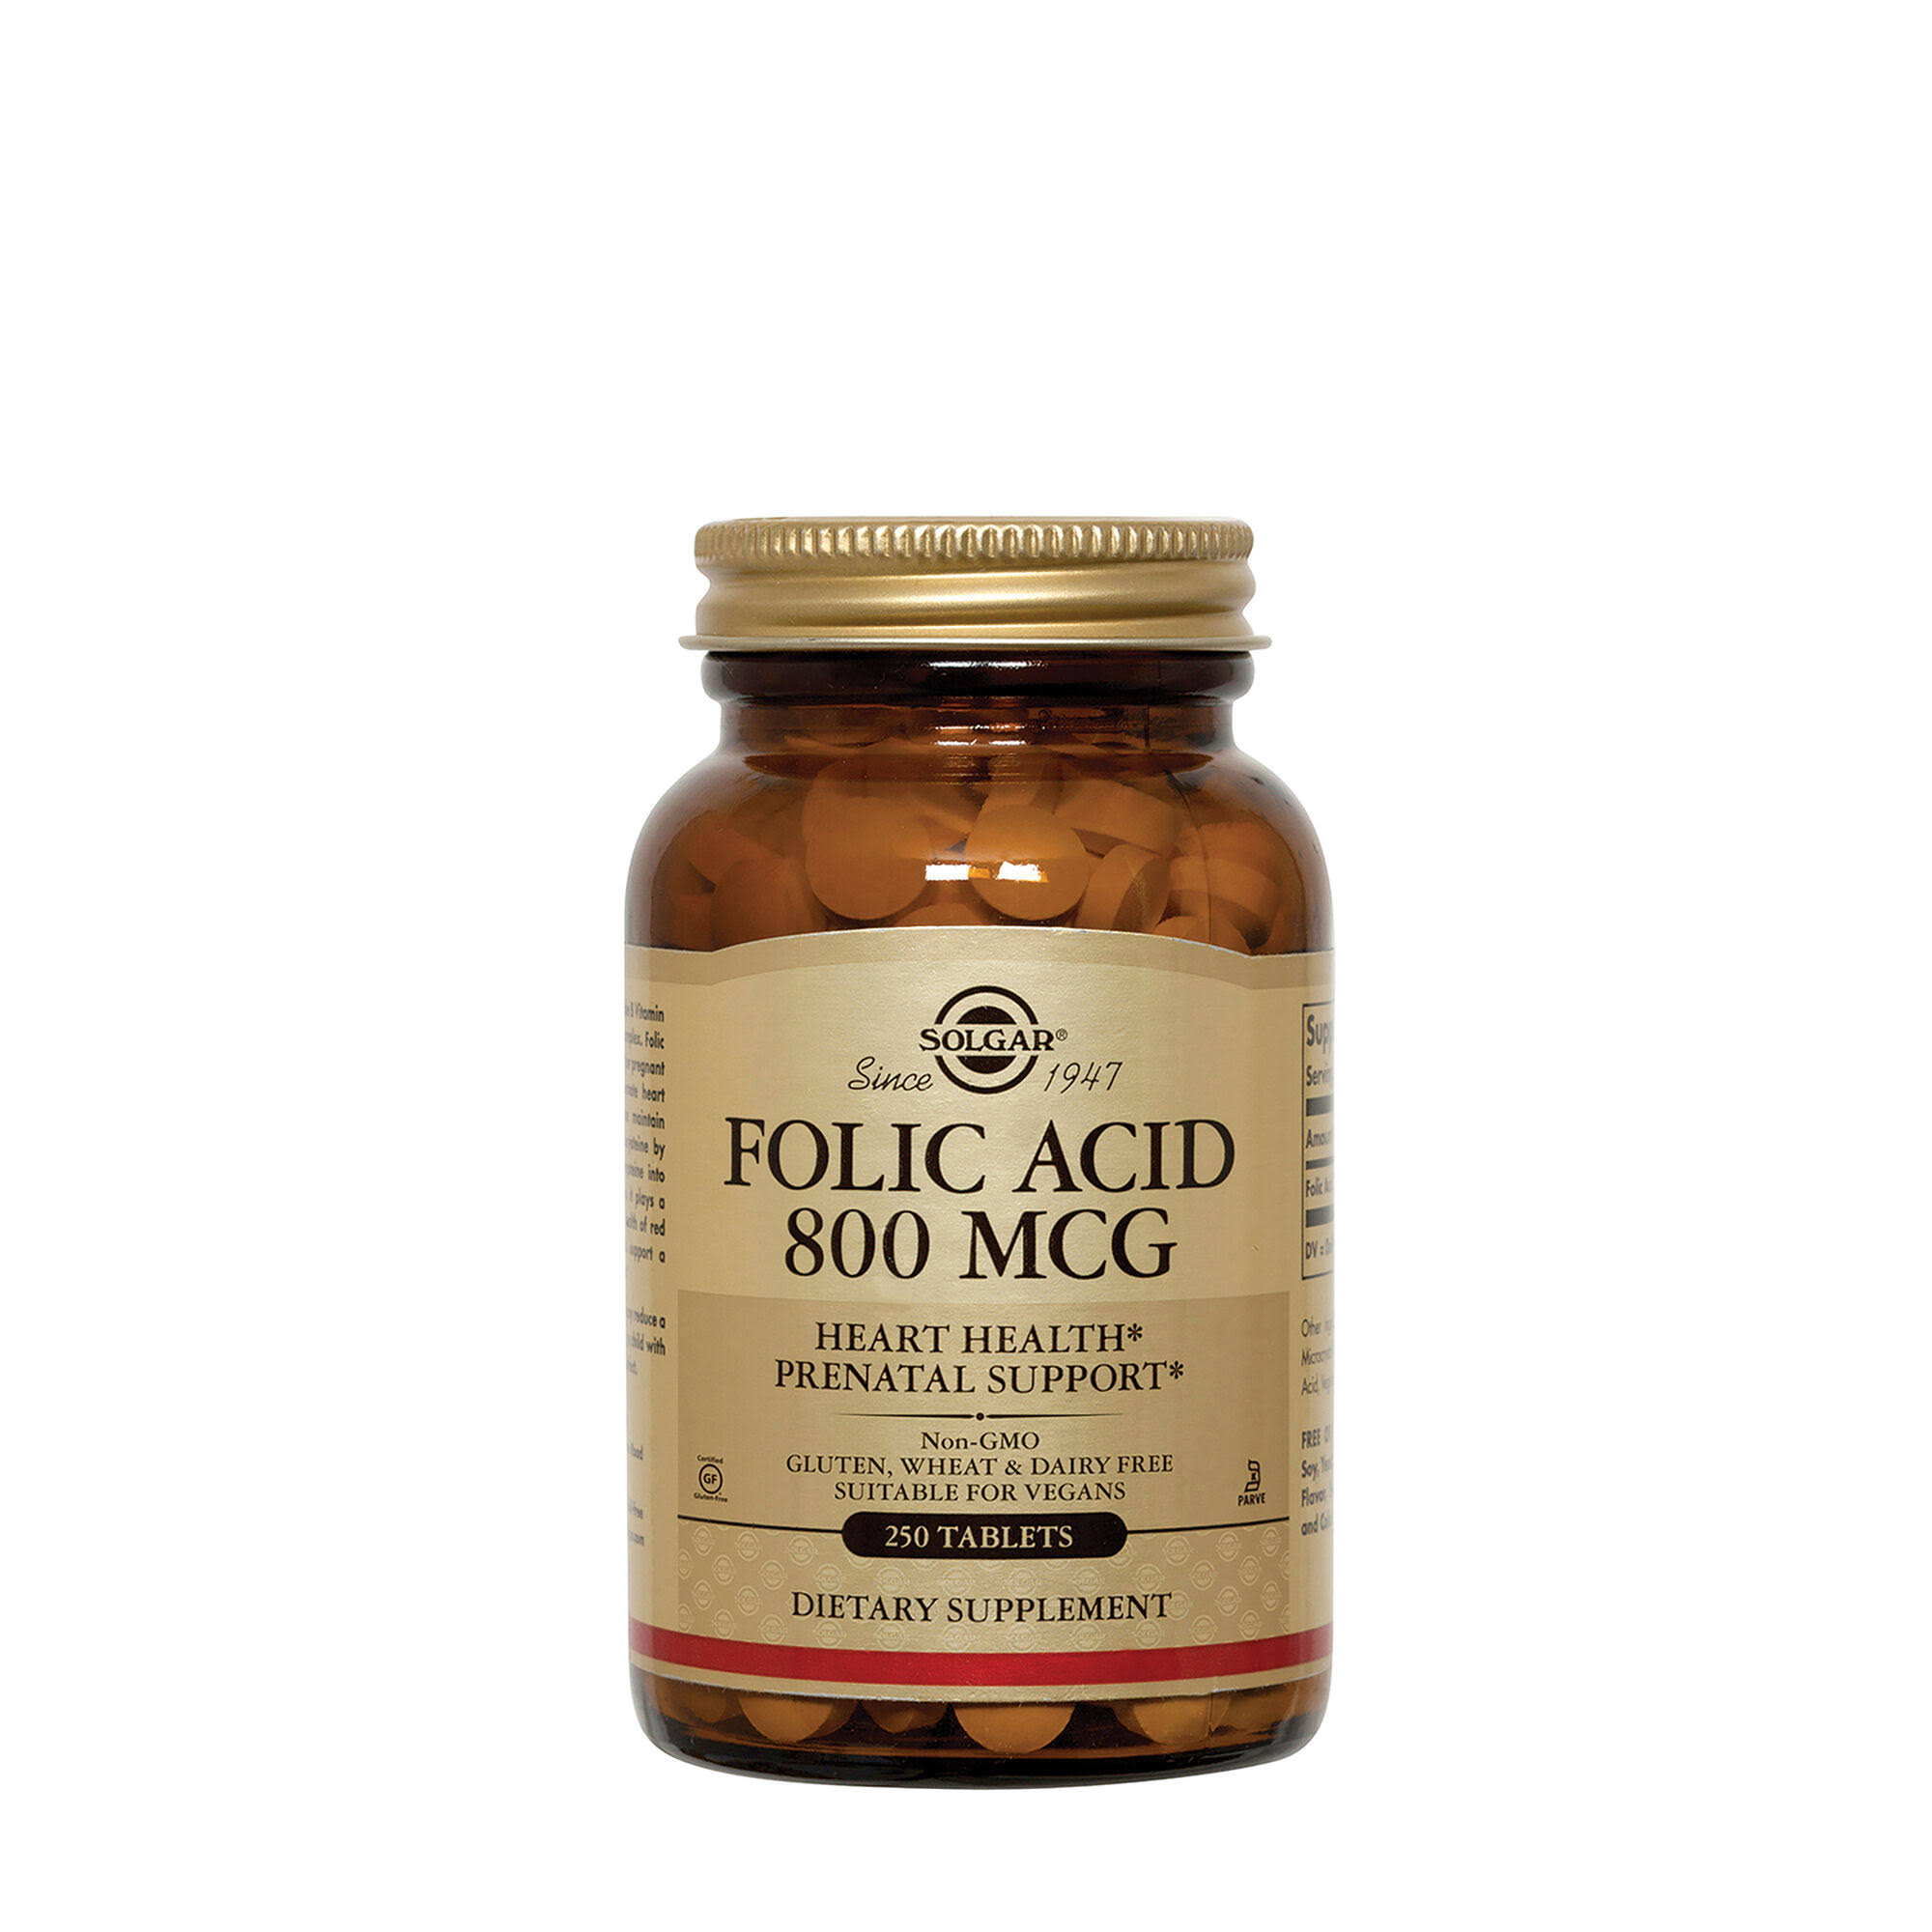 Solgar Folic Acid Supplement - 250 Tablets